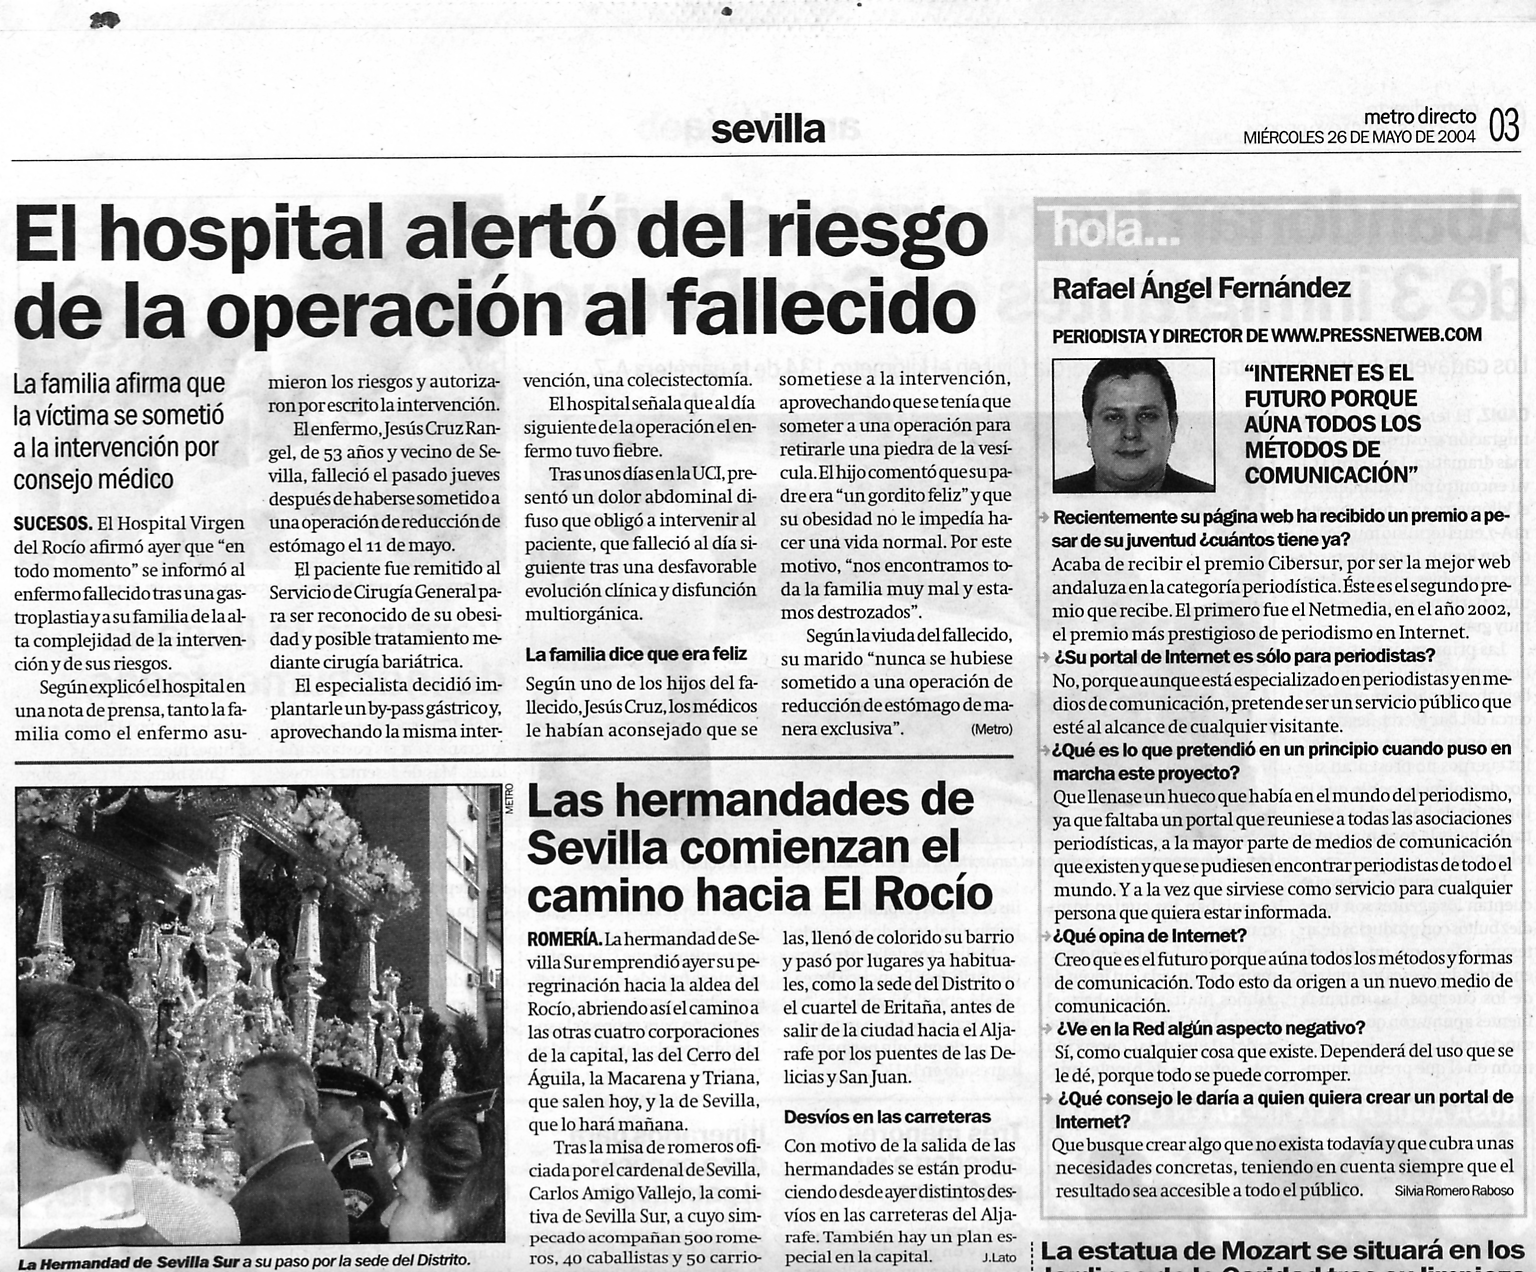 Metro News Sevilla (26-05-2004) (24-05-2004) (A) / Pulse Aqu para Visitar su Web